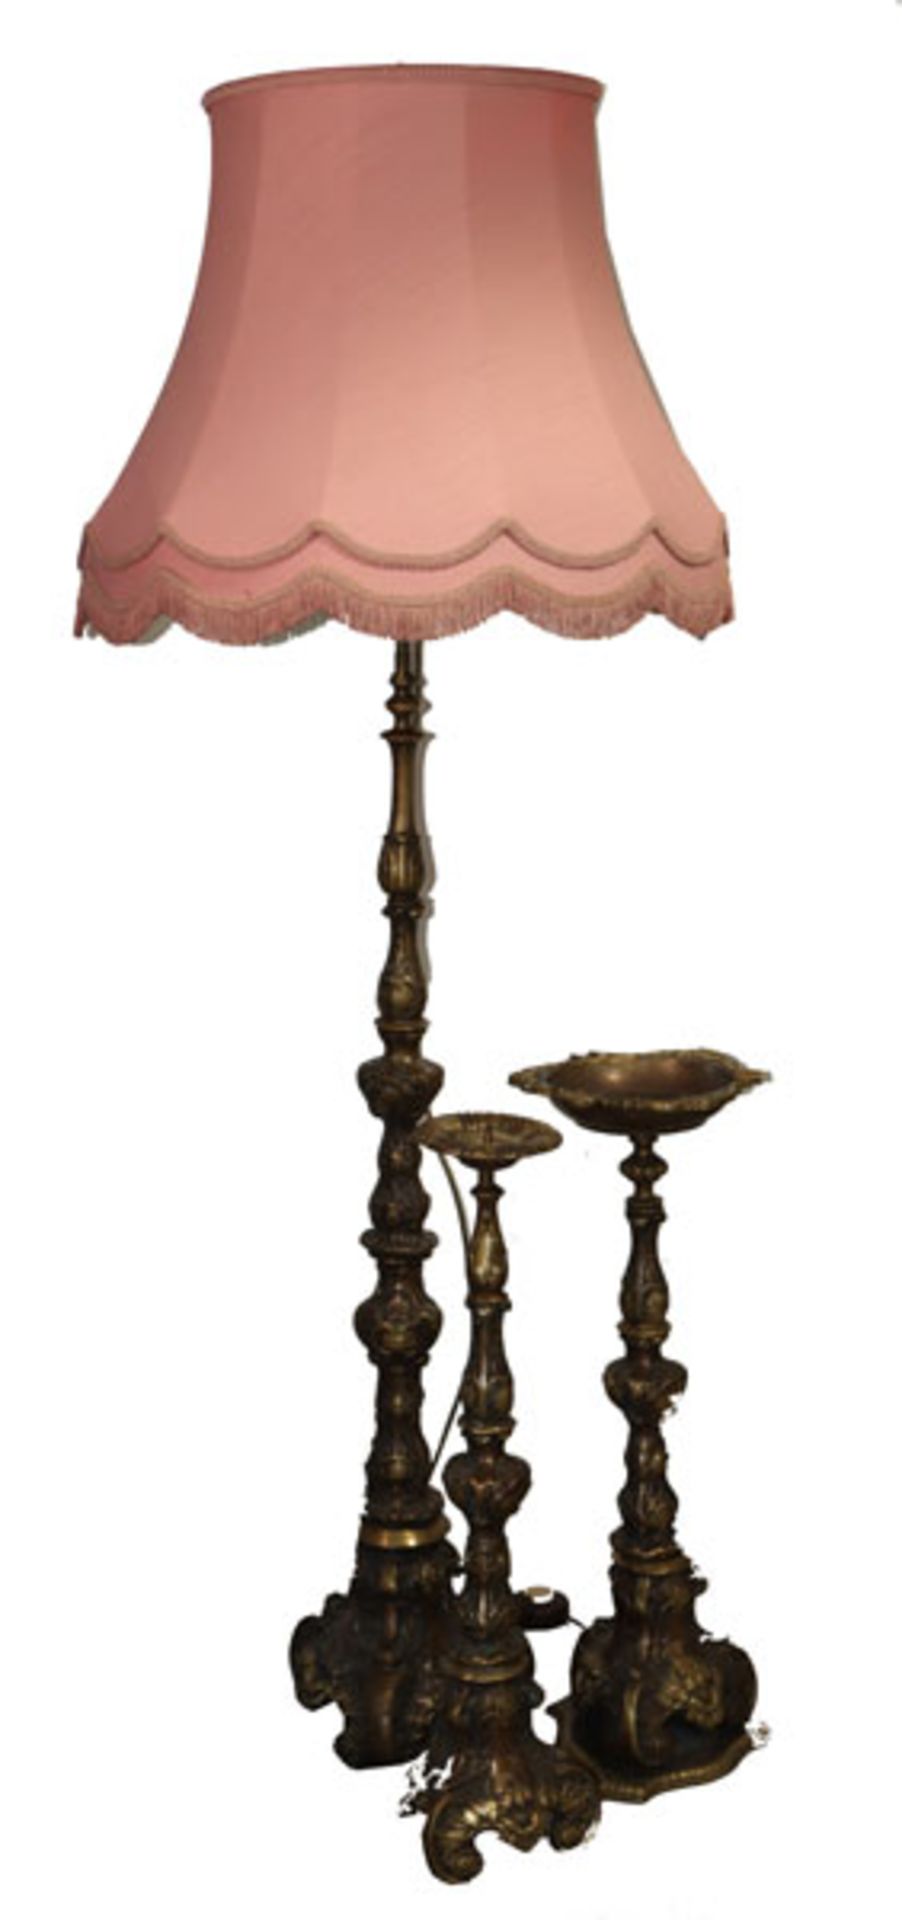 Messing Stehlampe mit rosefarbenen Schirm, H 162 cm, D 60 cm, Stand-Kerzenleuchter und Aschenbecher,